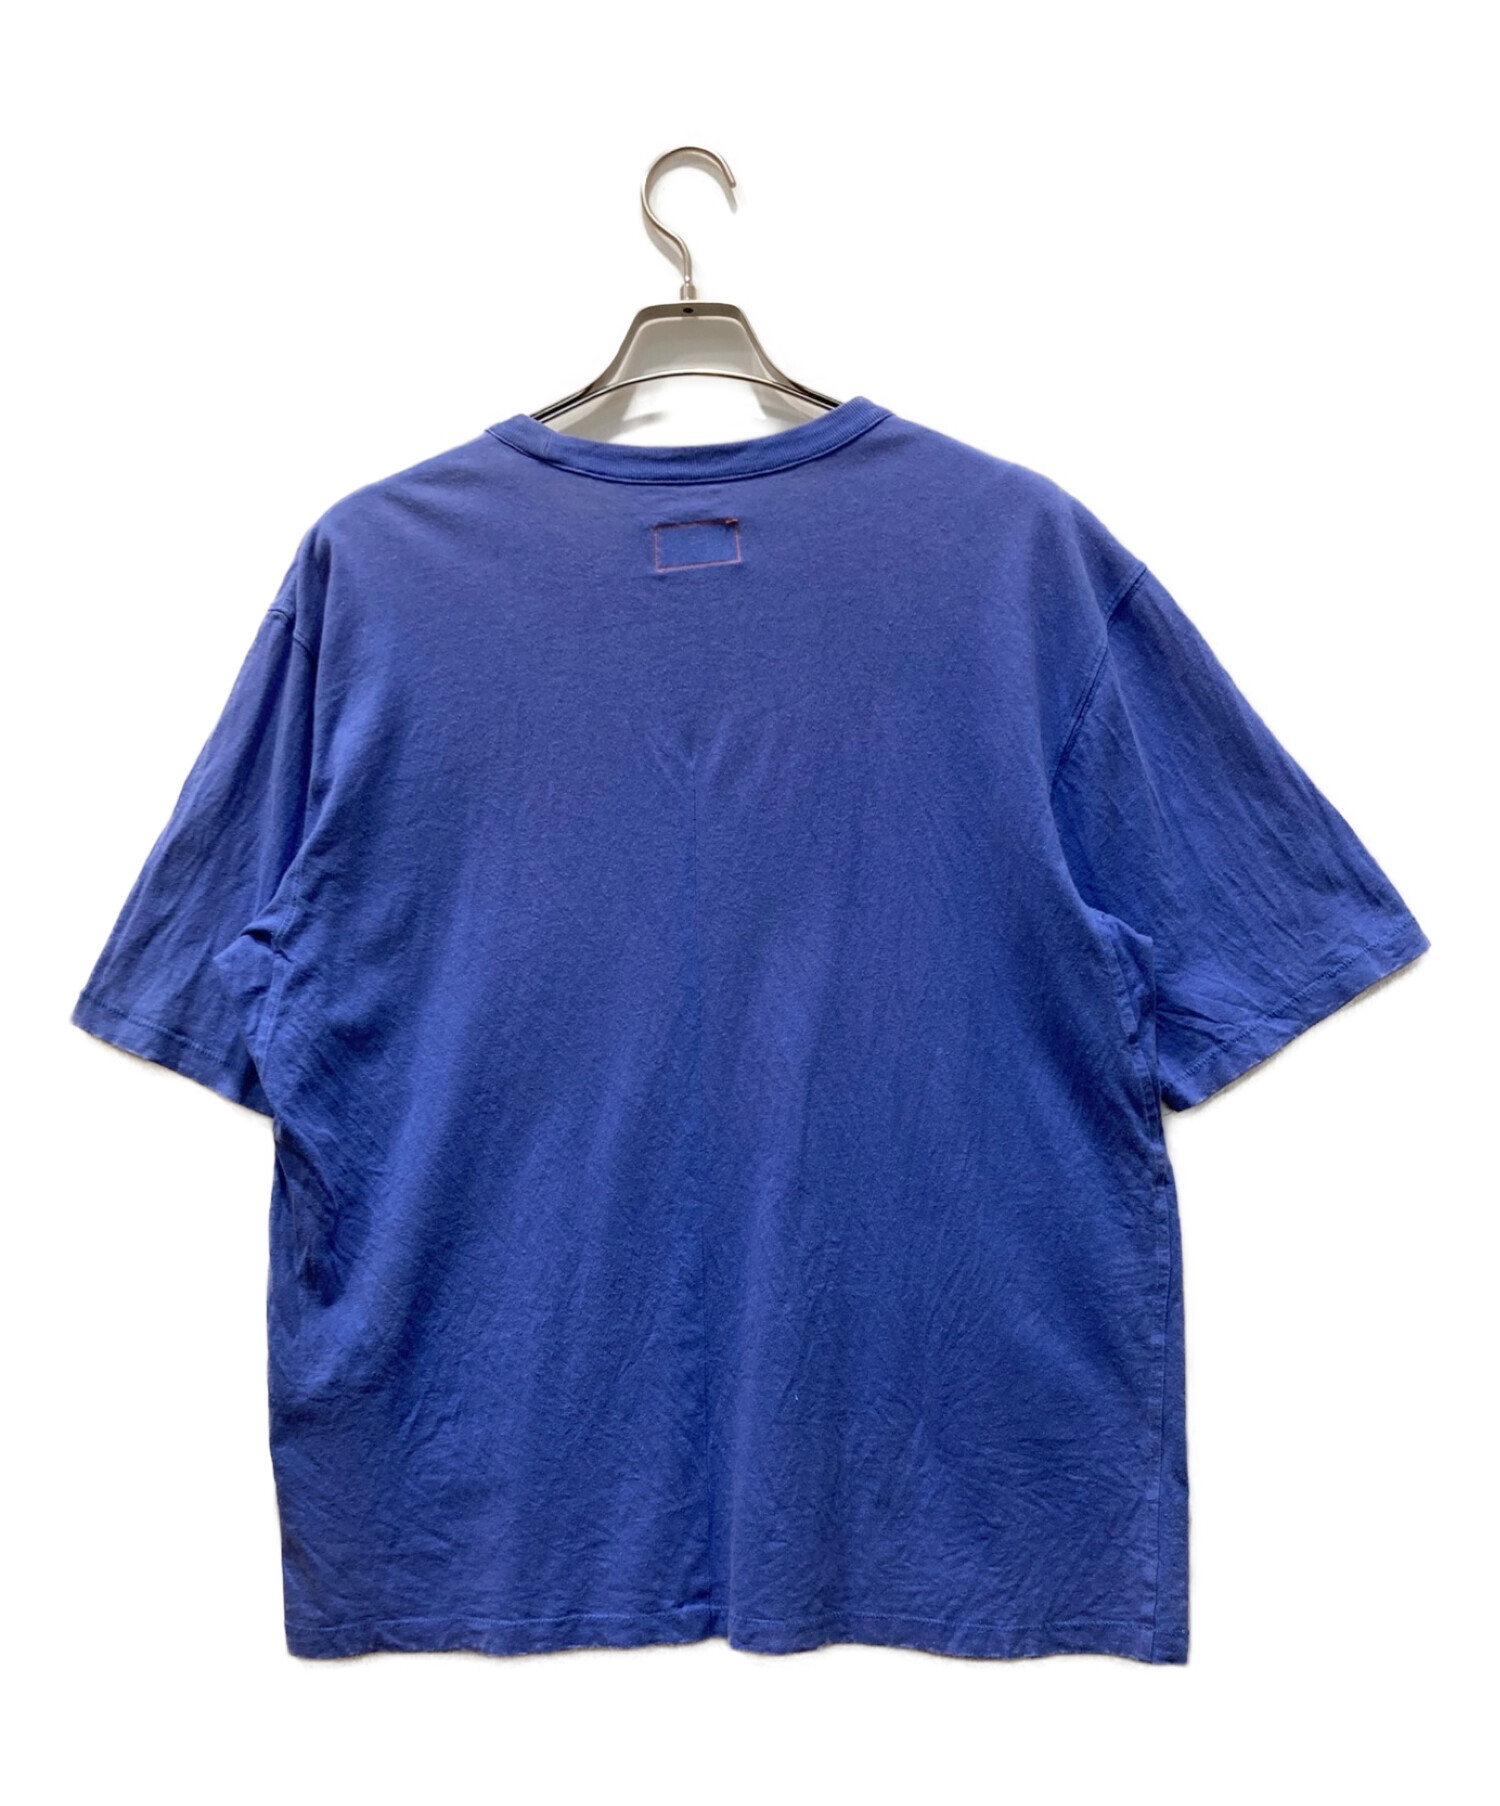 Calvin Klein (カルバンクライン) HERON PRESTON (ヘロンプレストン) Tシャツ ネイビー サイズ:M